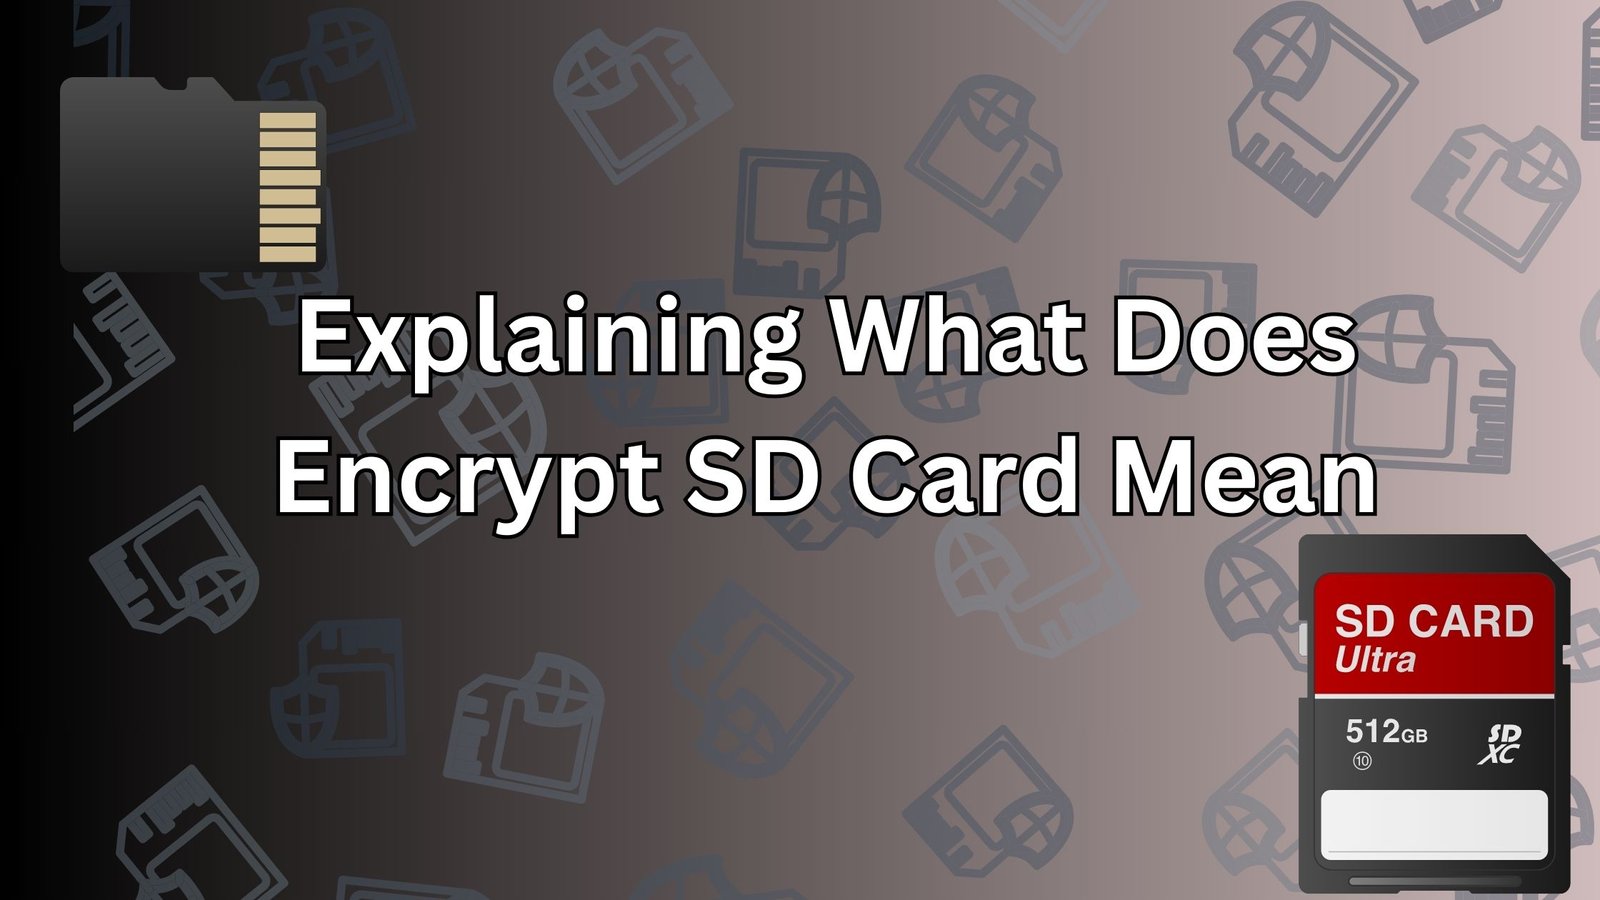 Encrypt SD Card